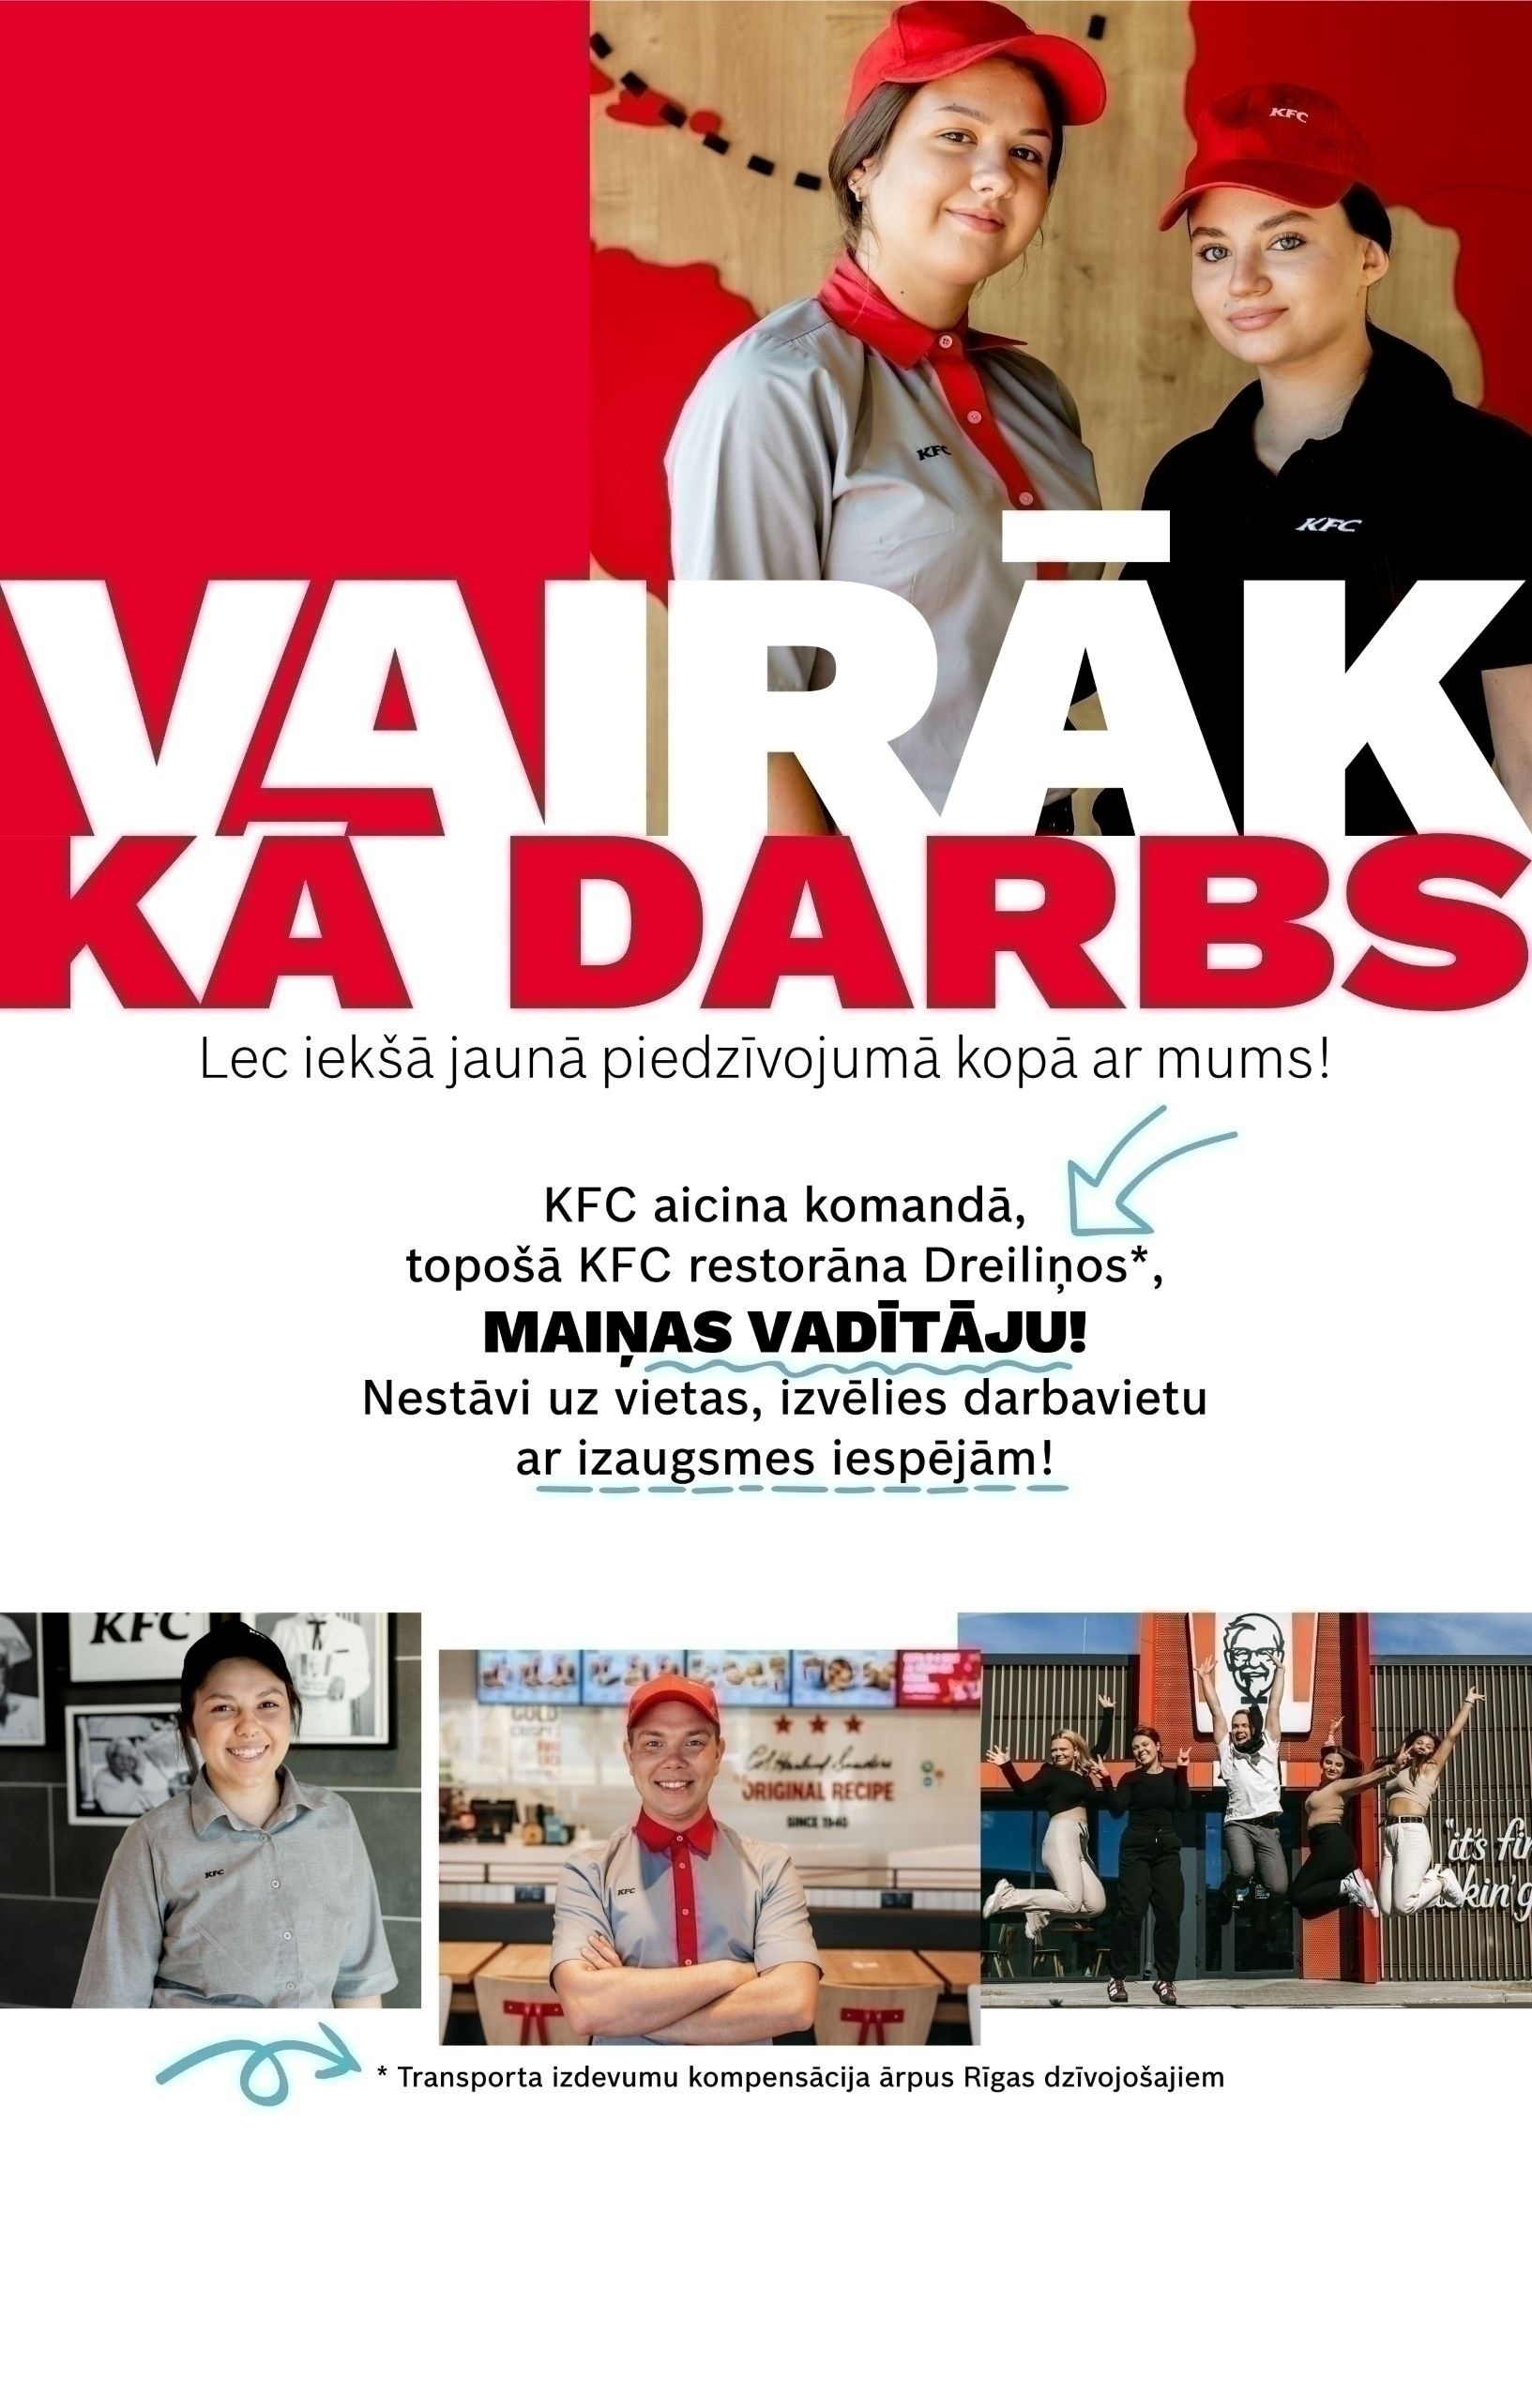 CVMarket.lv klients Pirmais "KFC Drive Thru" Latvijā! Pievienojies par jaunāko maiņas vadītāju!